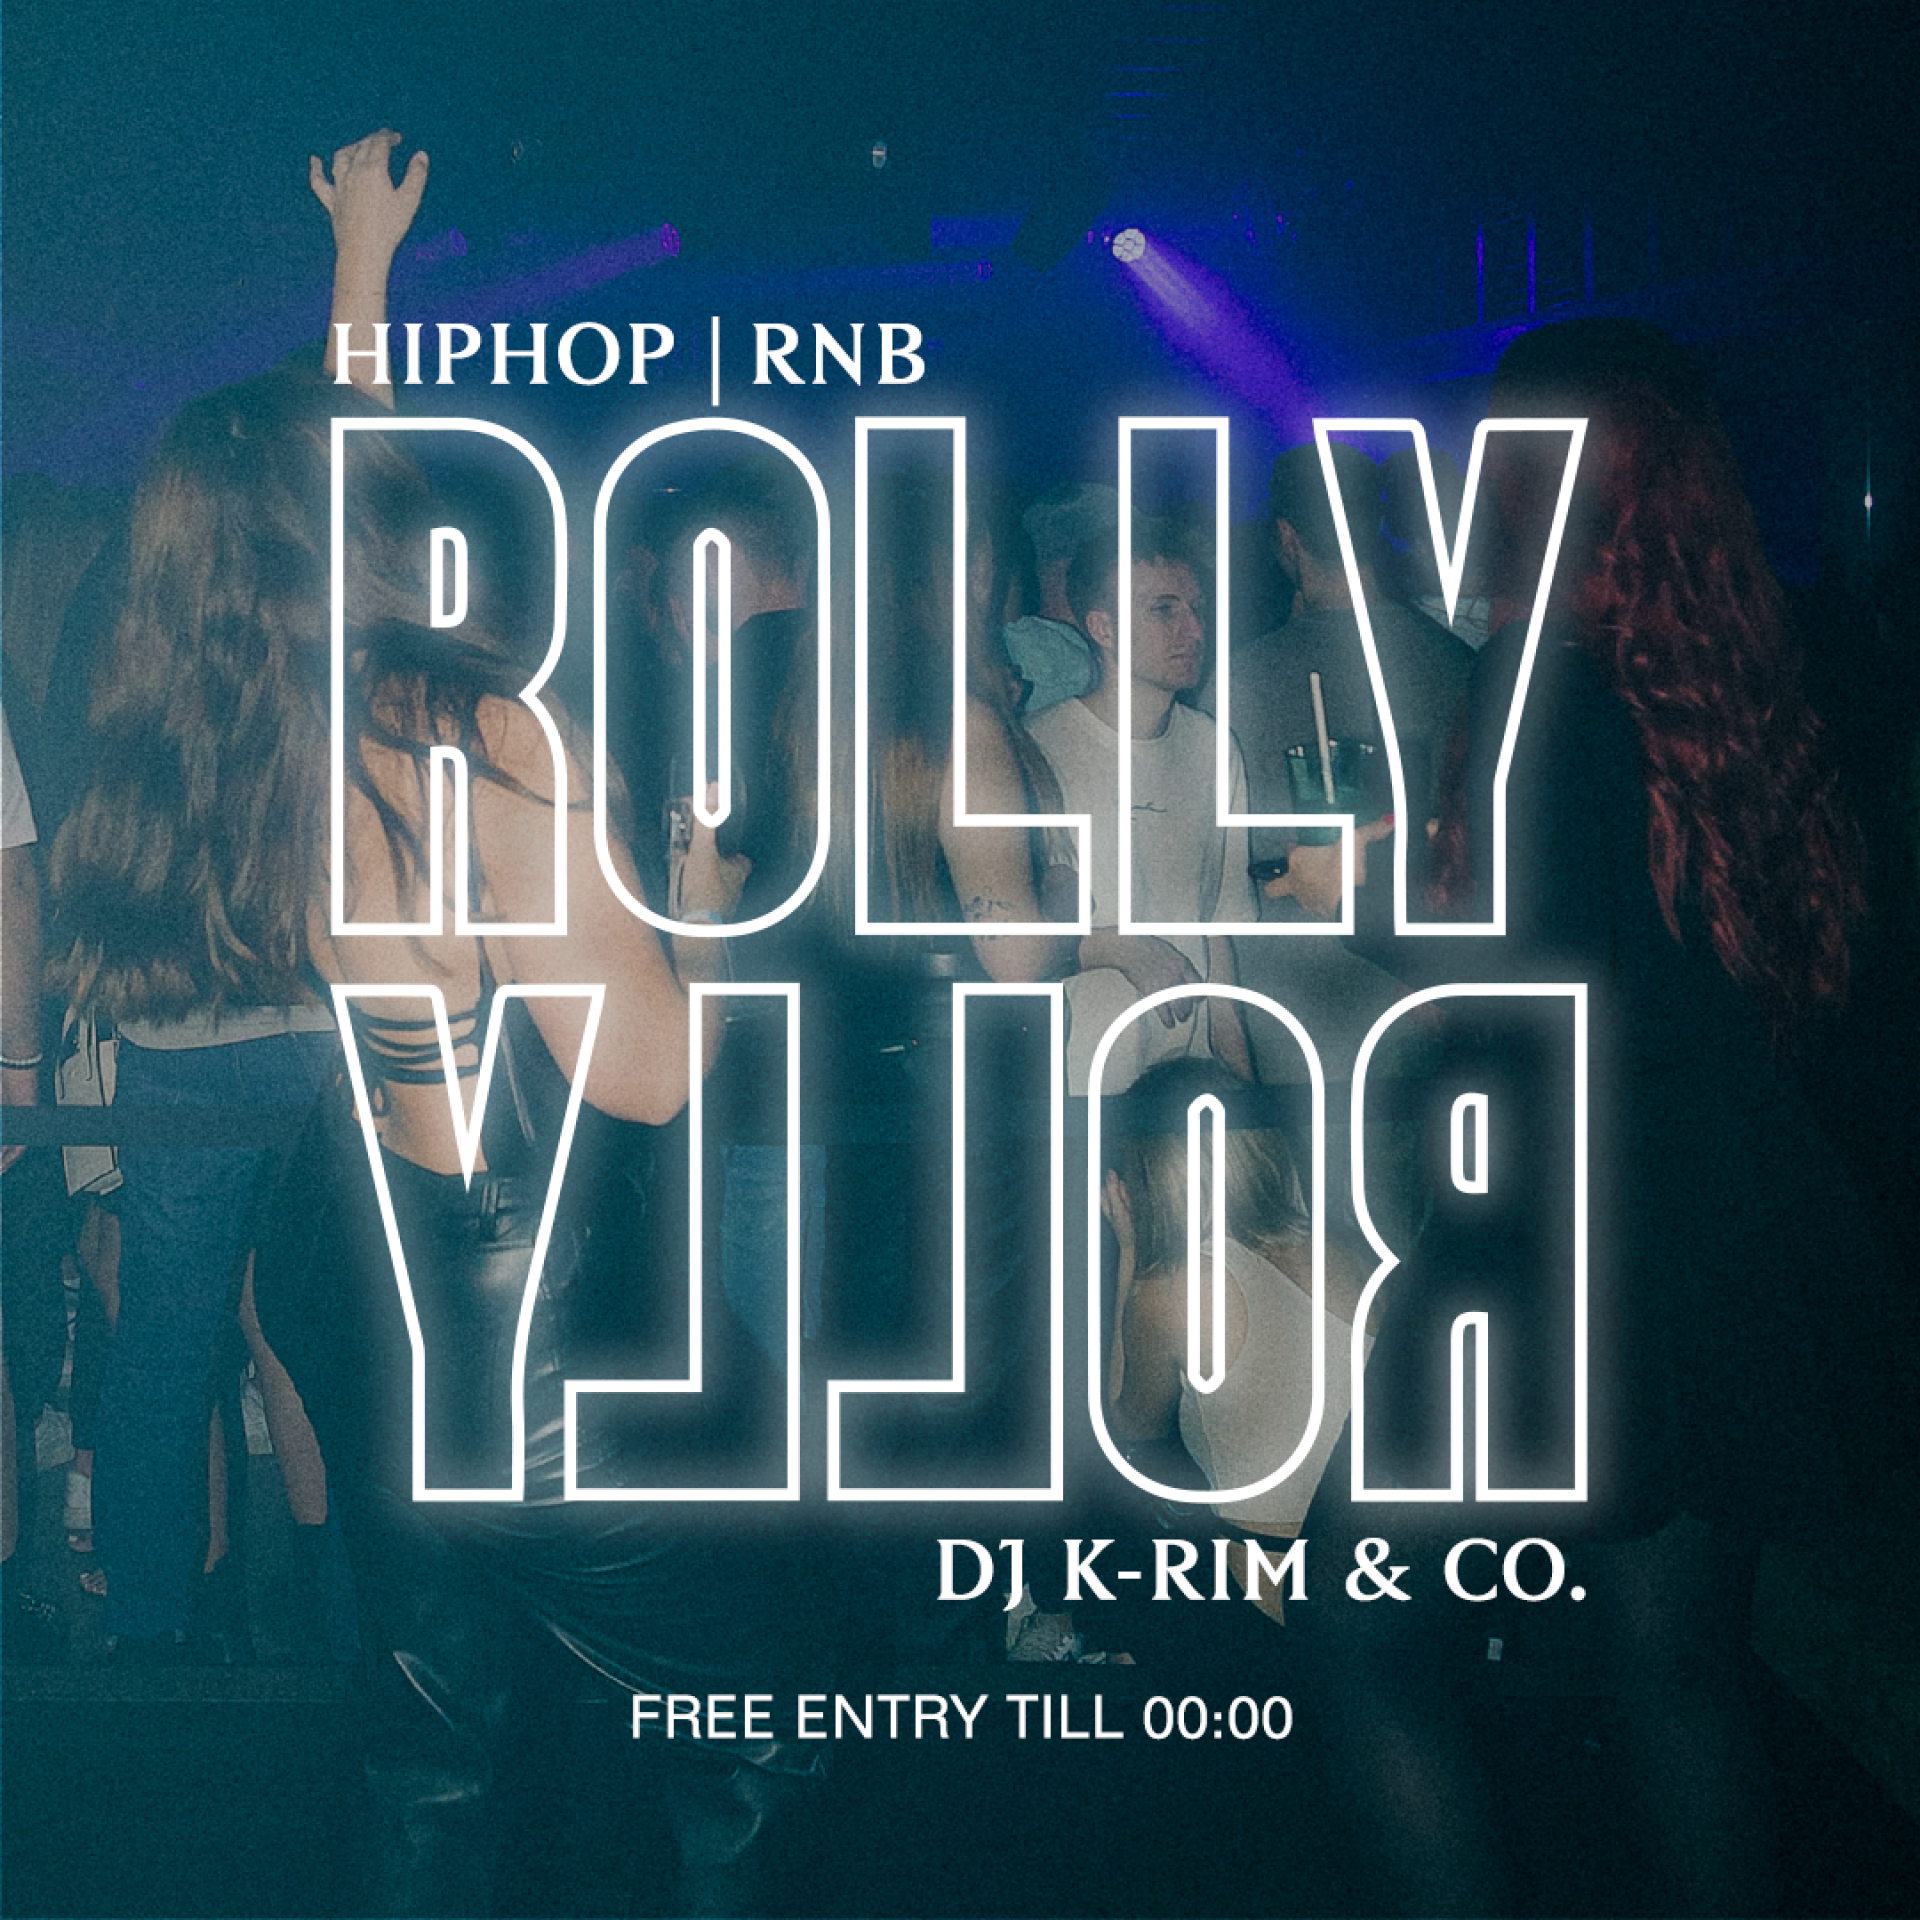 die HipHop & RnB Nacht mit DJ K-RIM